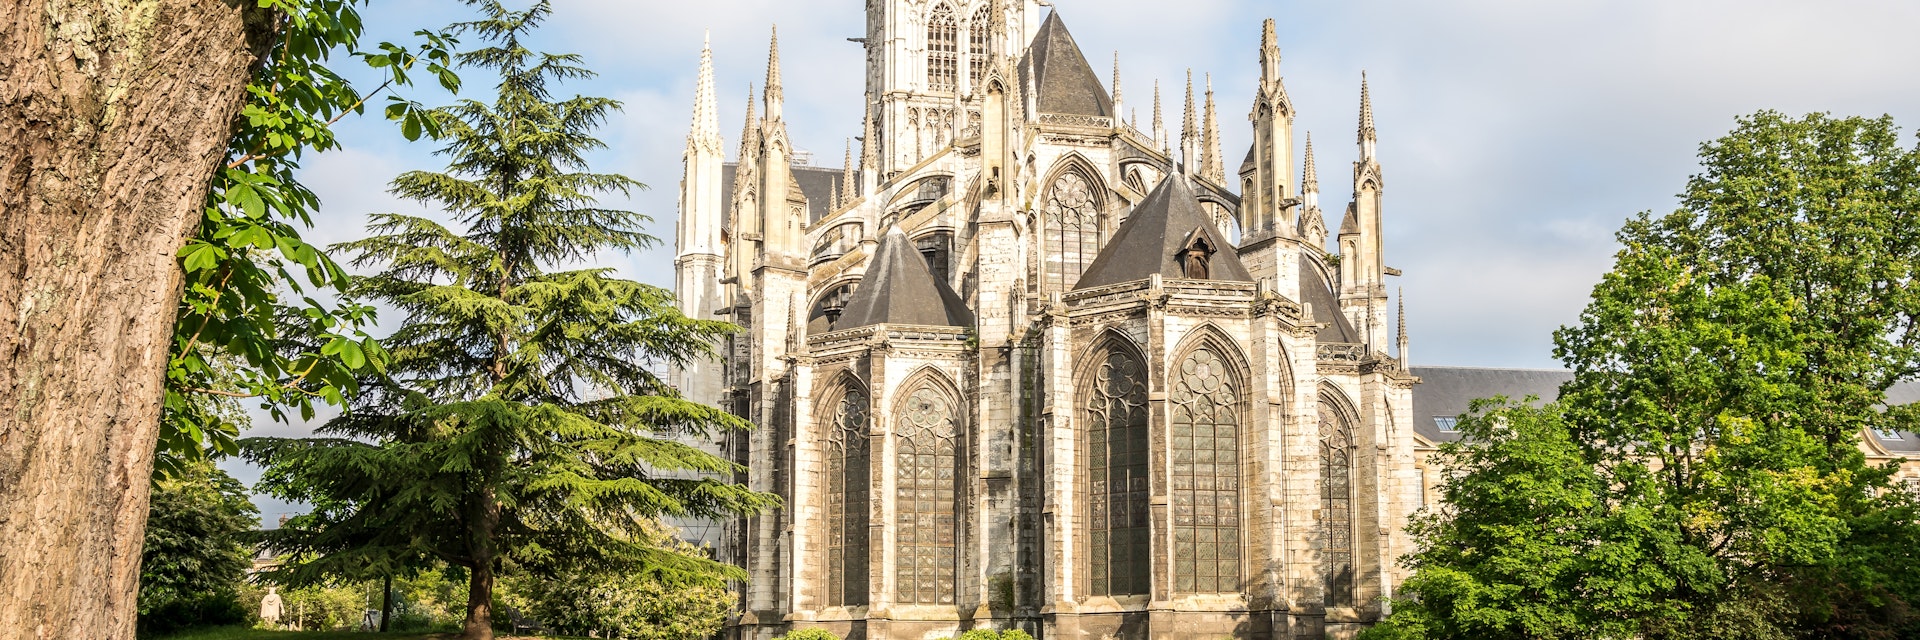 The Saint Ouen Abbey Church in Rouen, France.